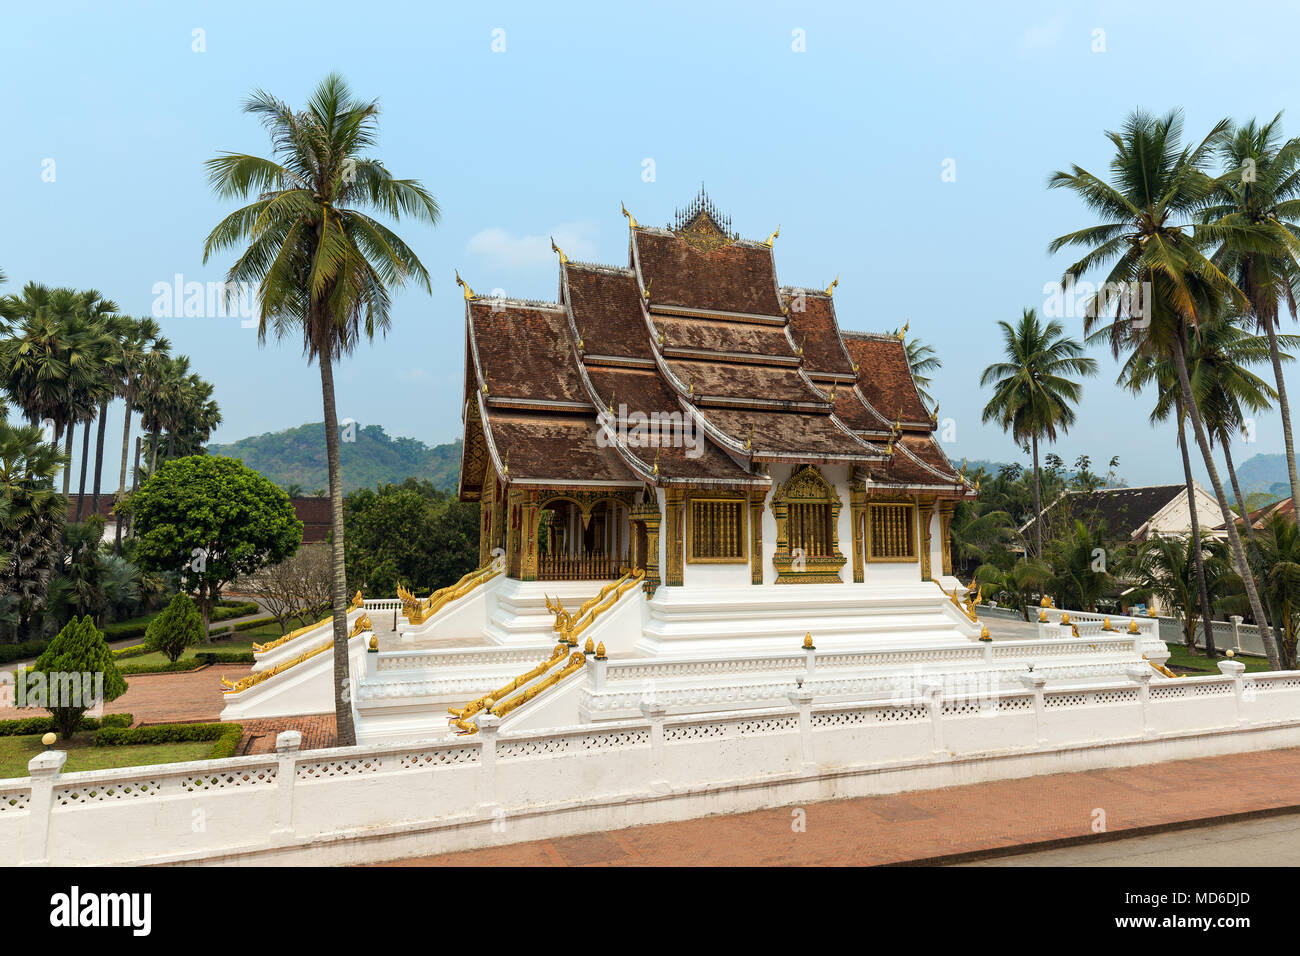 Vue de l'Haw Pha Bang temple, également connu sous le nom de Palais Royal ou chapelle. Il est situé à côté du Palais Royal de Luang Prabang, Laos. Banque D'Images